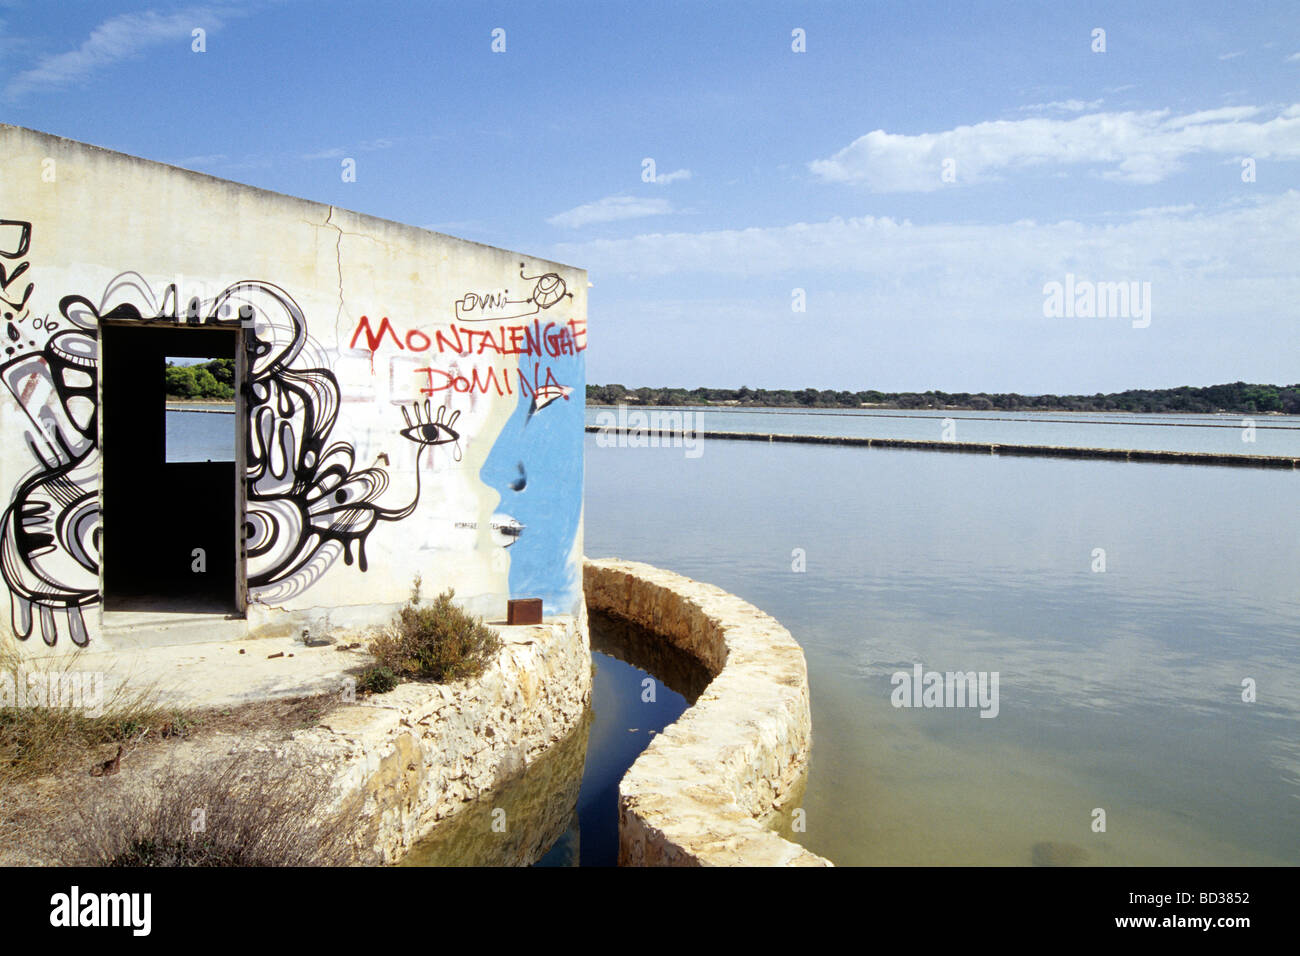 Parete con graffiti sulle opere di sale, Ses Salines Salt Lake vicino a Es Pujols, Illa de l'isola di Formentera, isole Baleari, Spagna, Foto Stock